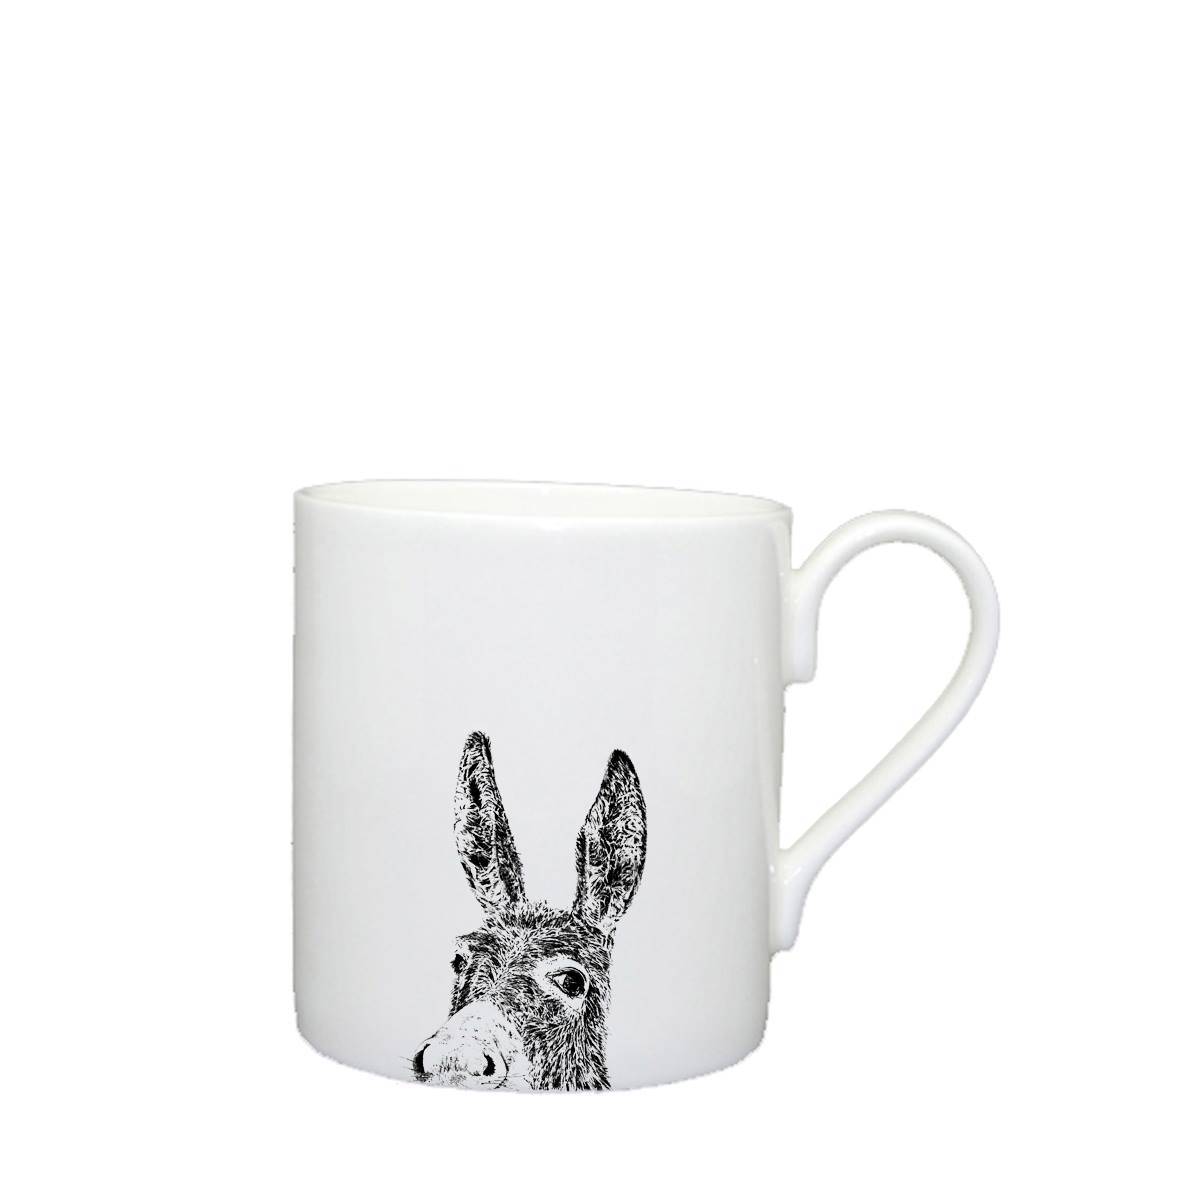 Donkey Mug - Large for sale - Woodcock and Cavendish